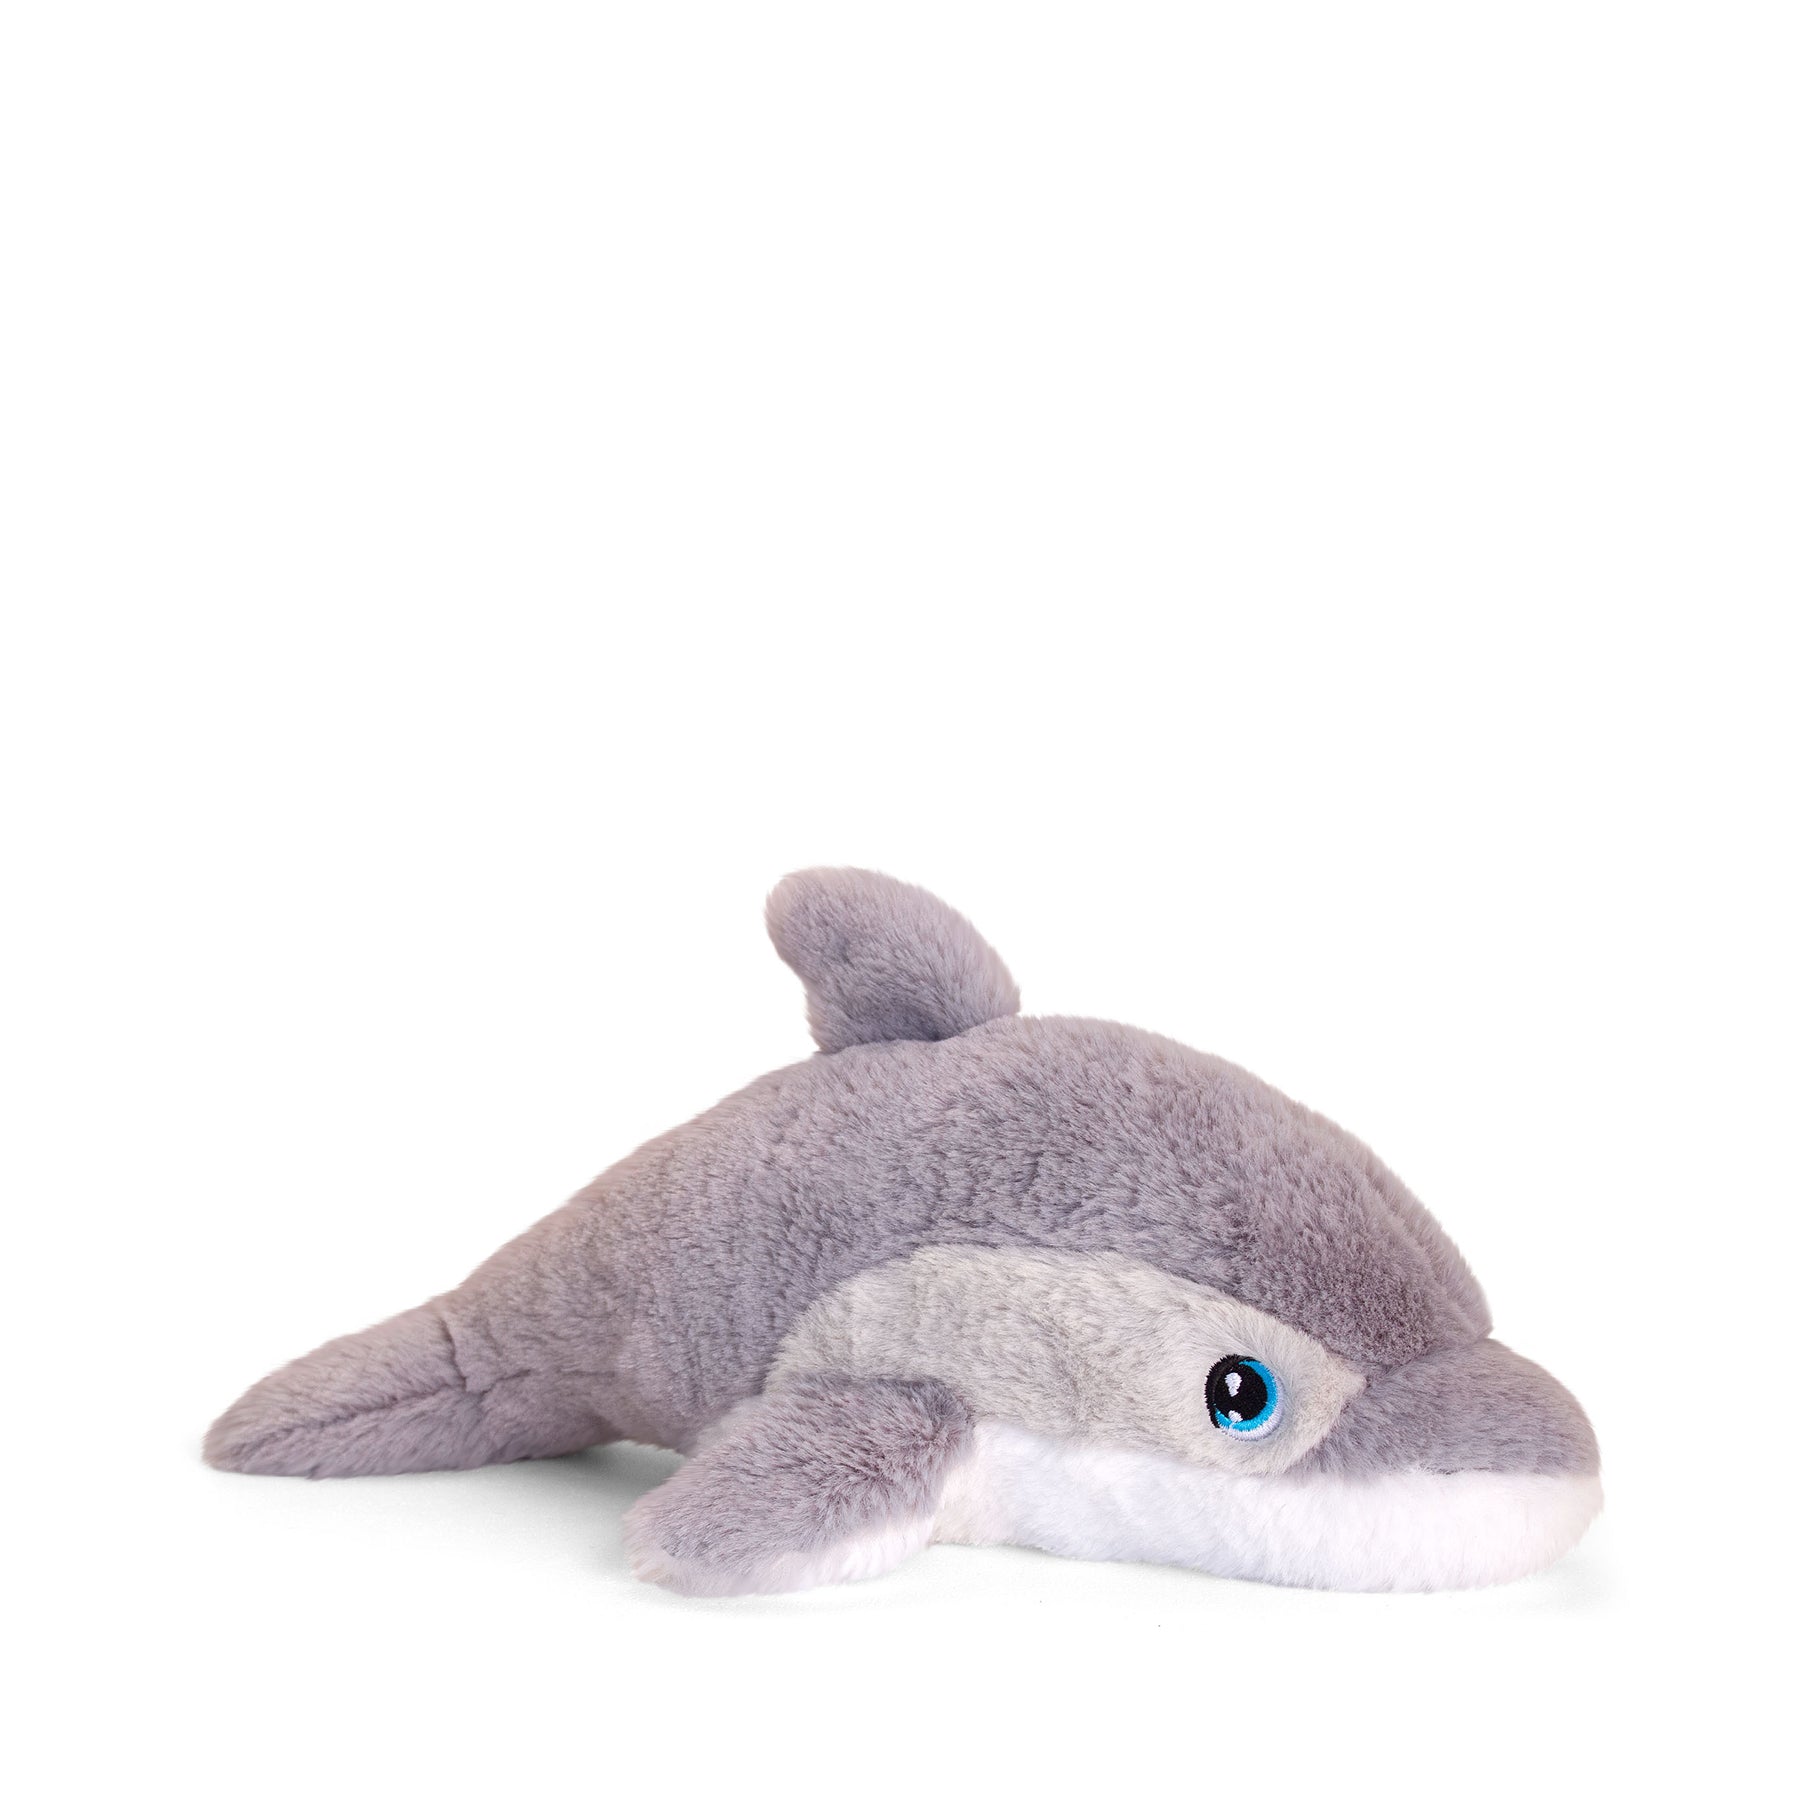 Keeleco dolphin 25cm